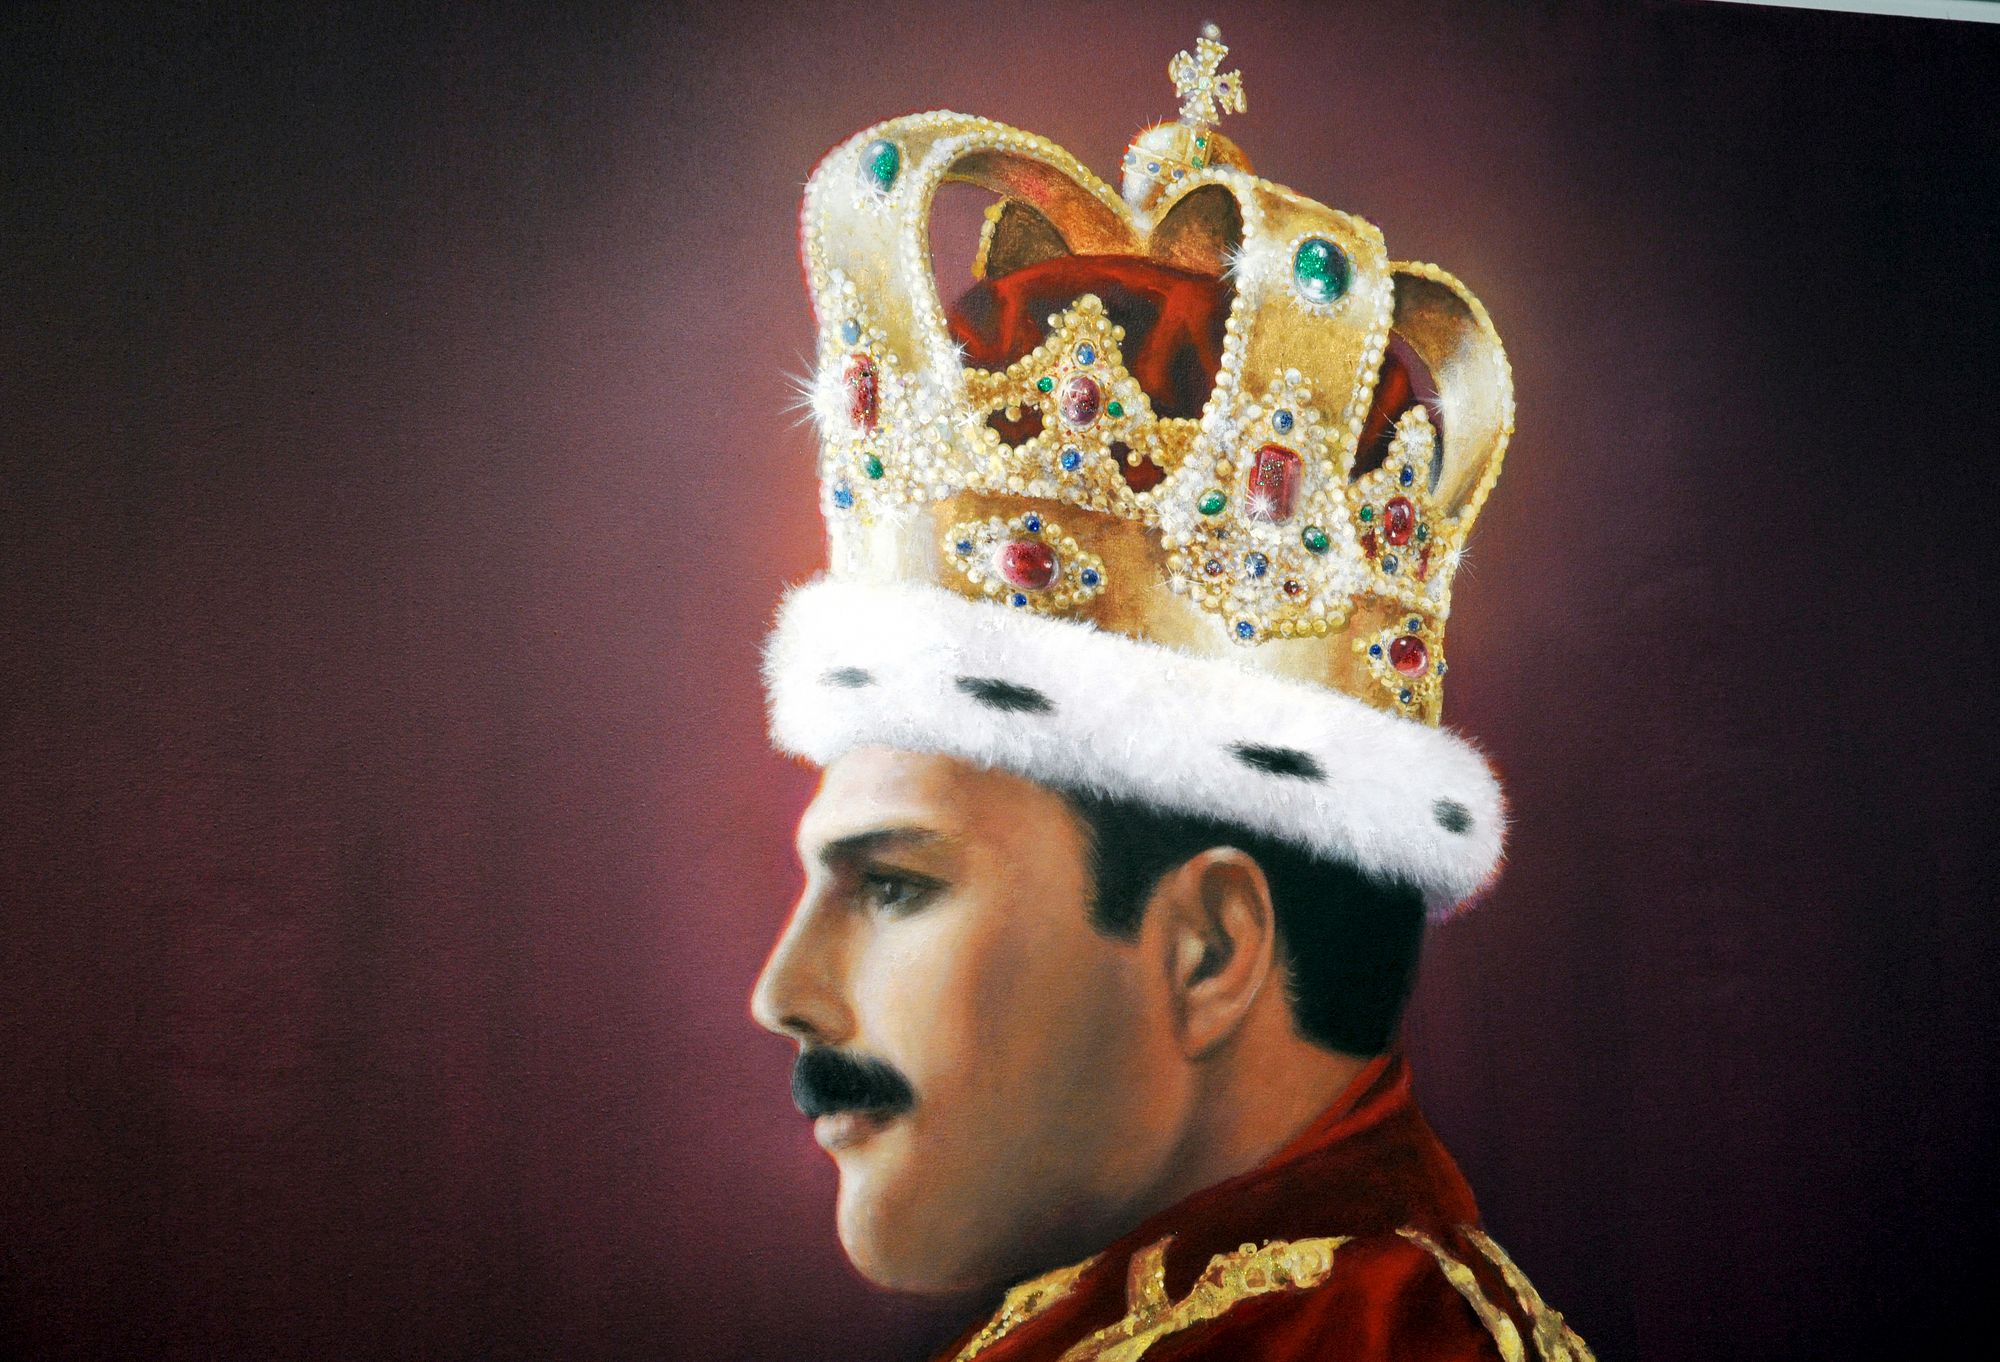   Queenin tunnetun Wembleyn konsertin lopuksi vuonna 1986 Freddie puki ylleen Britannian kuningashuoneen tunnukset: viitan ja kruunun. Kuva Jürgen D. Flohrin taideteoksesta. © HORST OSSINGER / AFP / MVPhotos